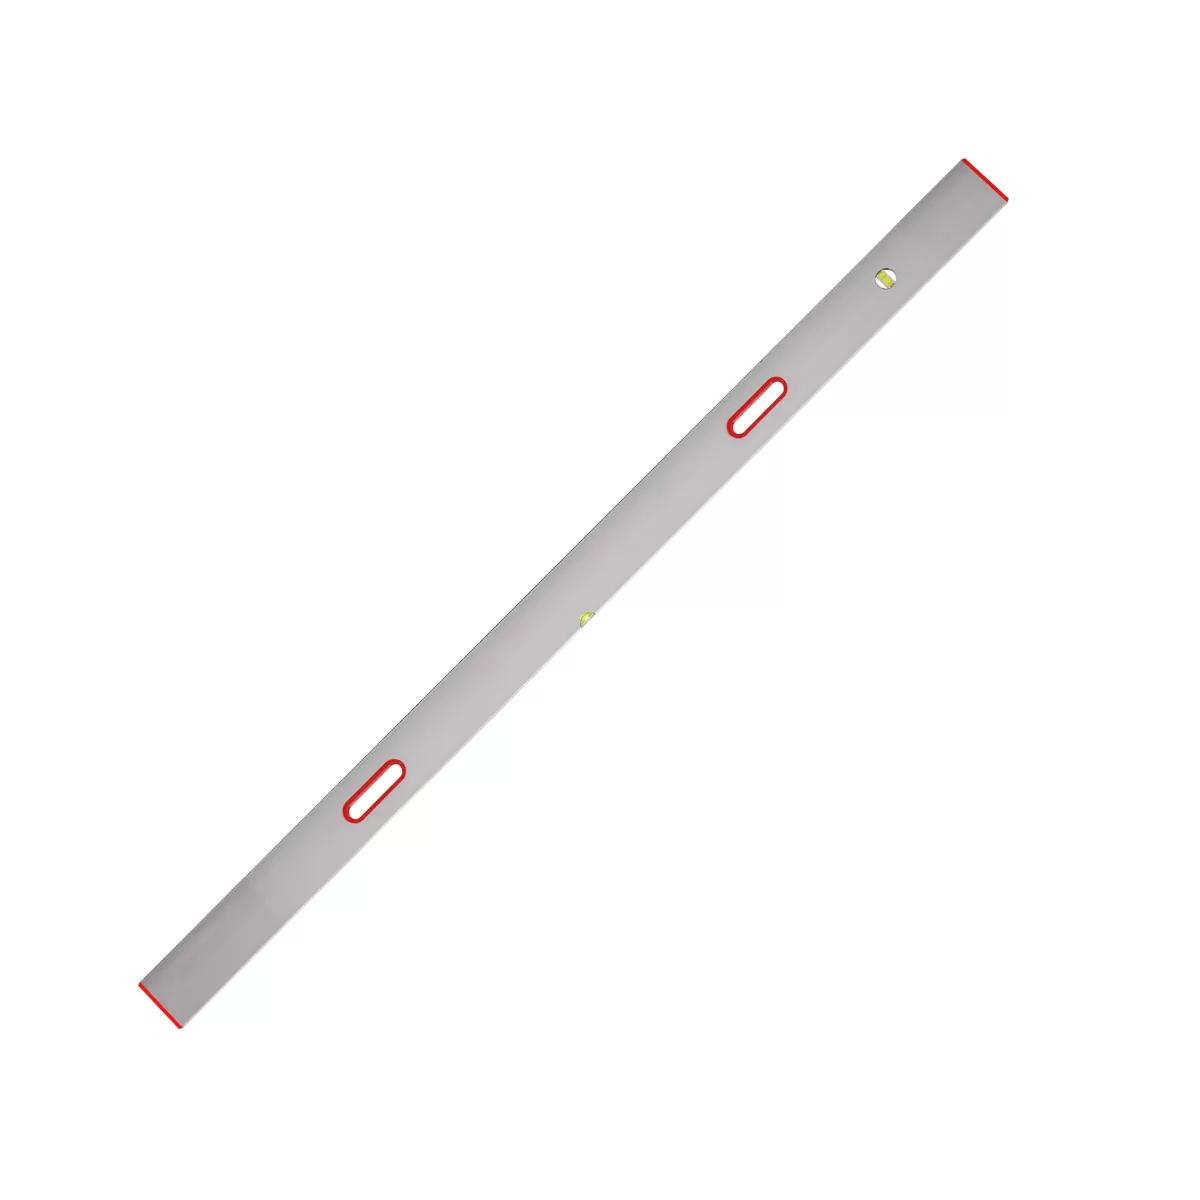 New type aluminium bar 2 axis, 6.5 ft / 2m 